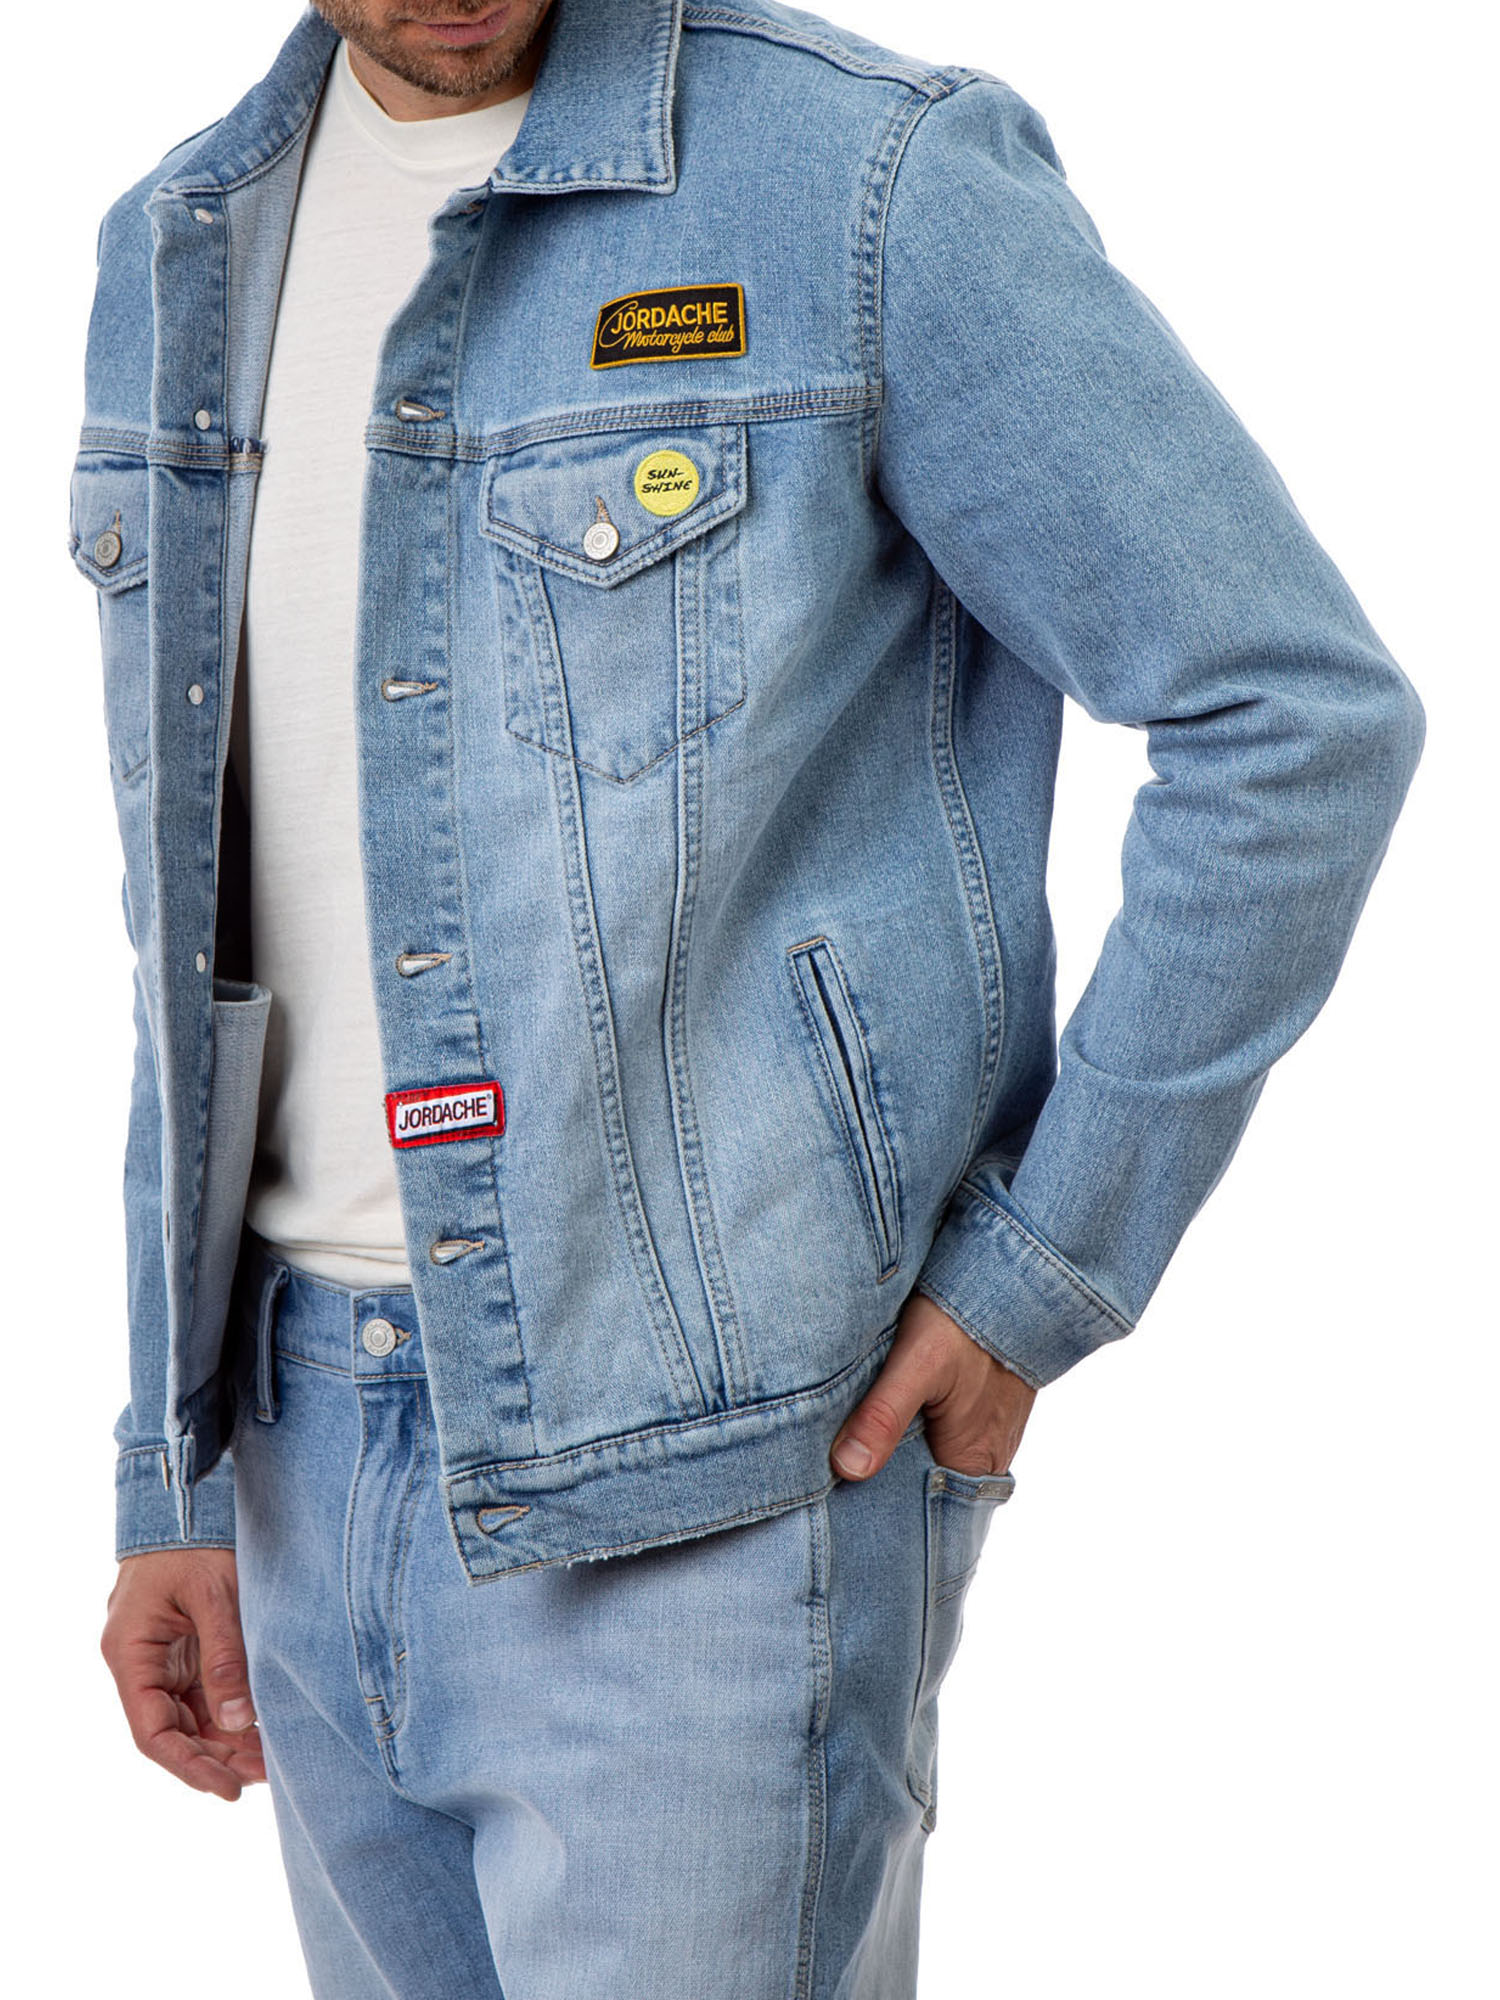 Jordache Vintage Men's Nash Patches Denim Jacket, Sizes S-2XL, Men's Denim Jean Jackets - image 5 of 6